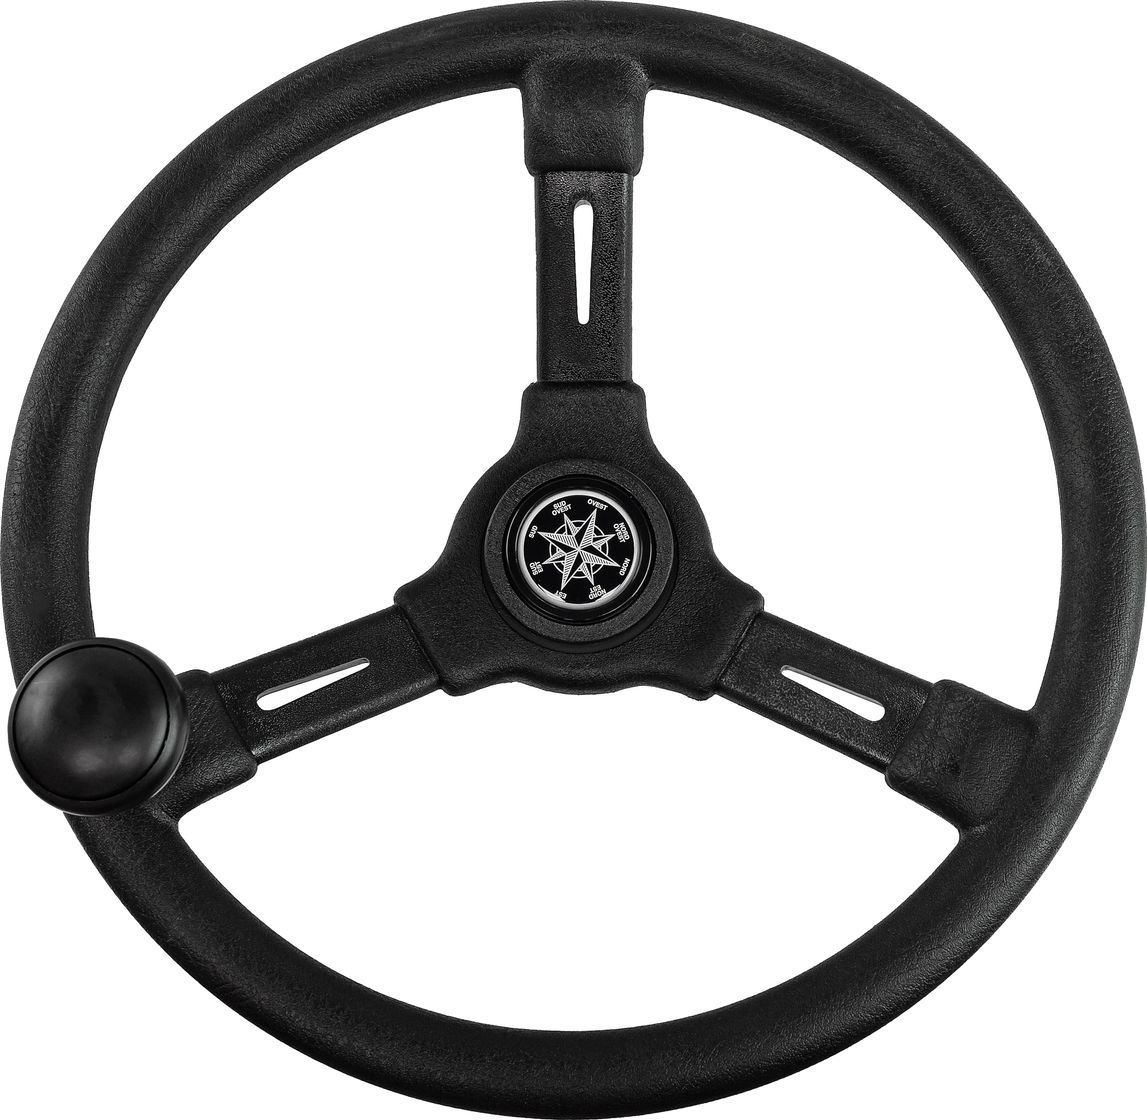 Рулевое колесо RIVIERA черный обод и спицы д. 350 мм со спинером VN8250-01 рулевое колесо elba обод белый спицы серебрянные д 320 мм vn70311 08